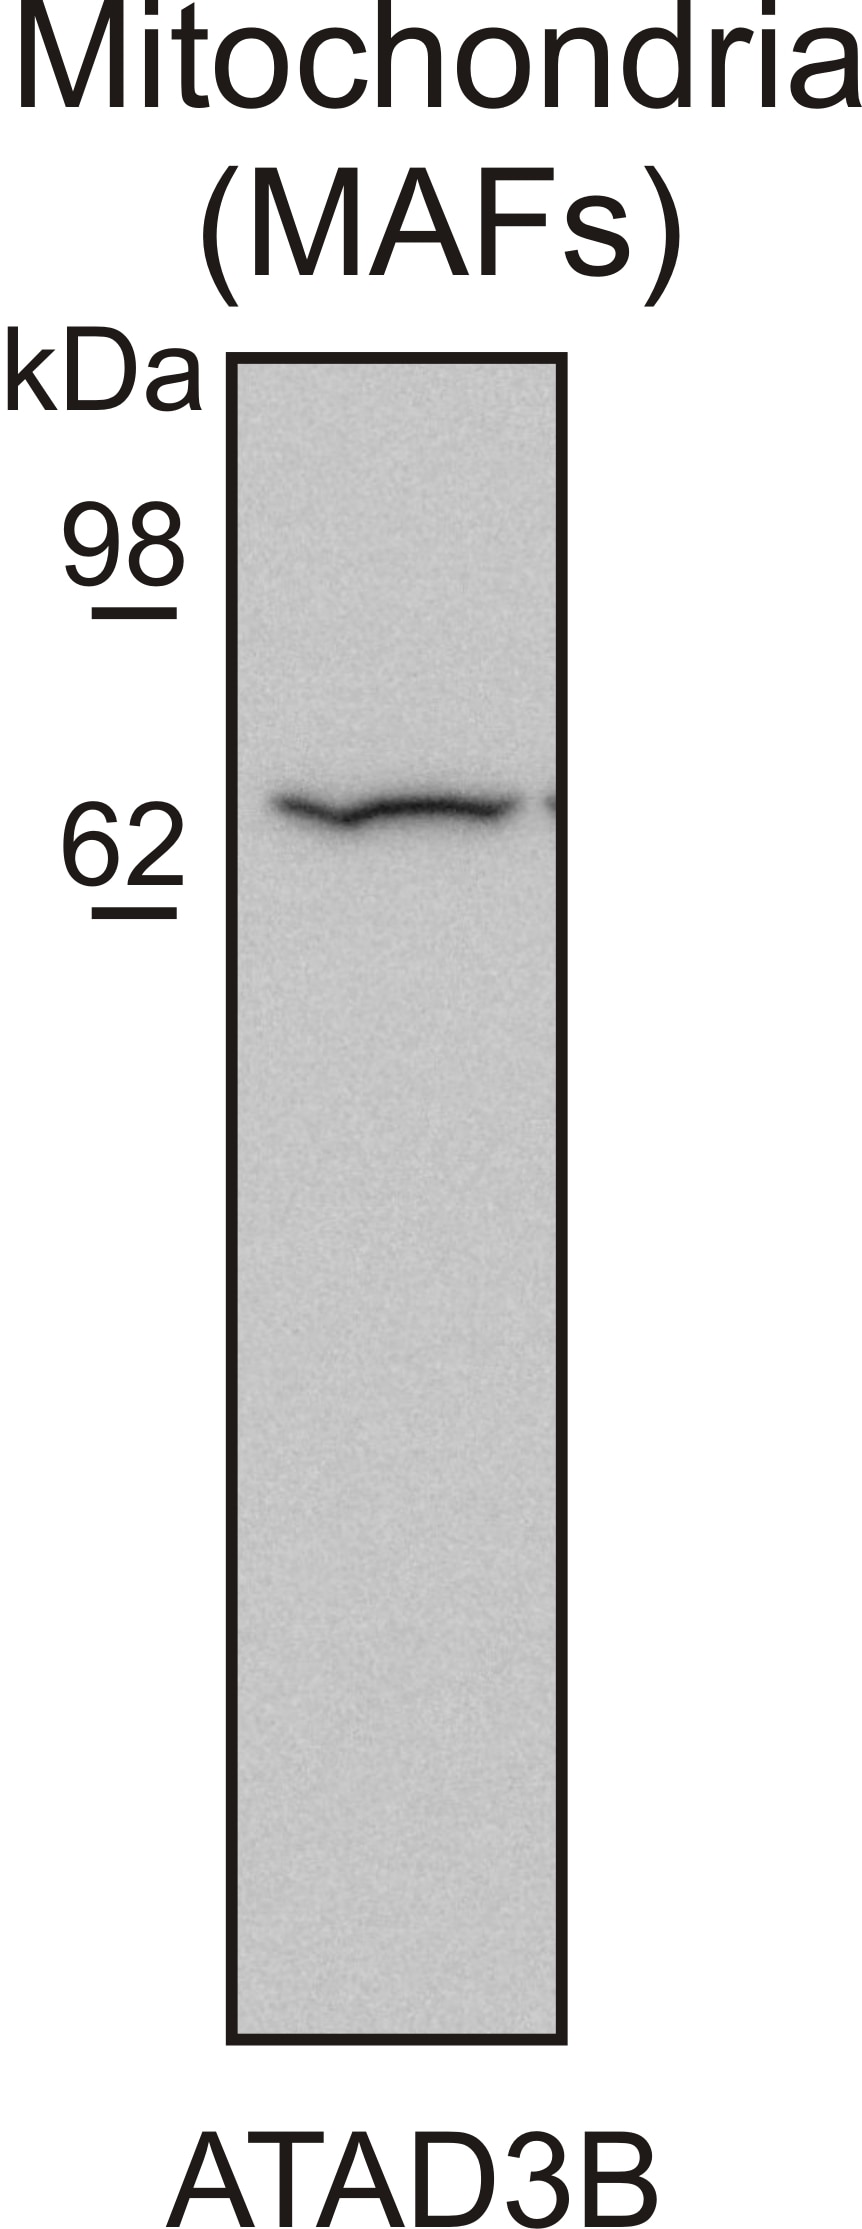 WB analysis of MAF cells using 16610-1-AP